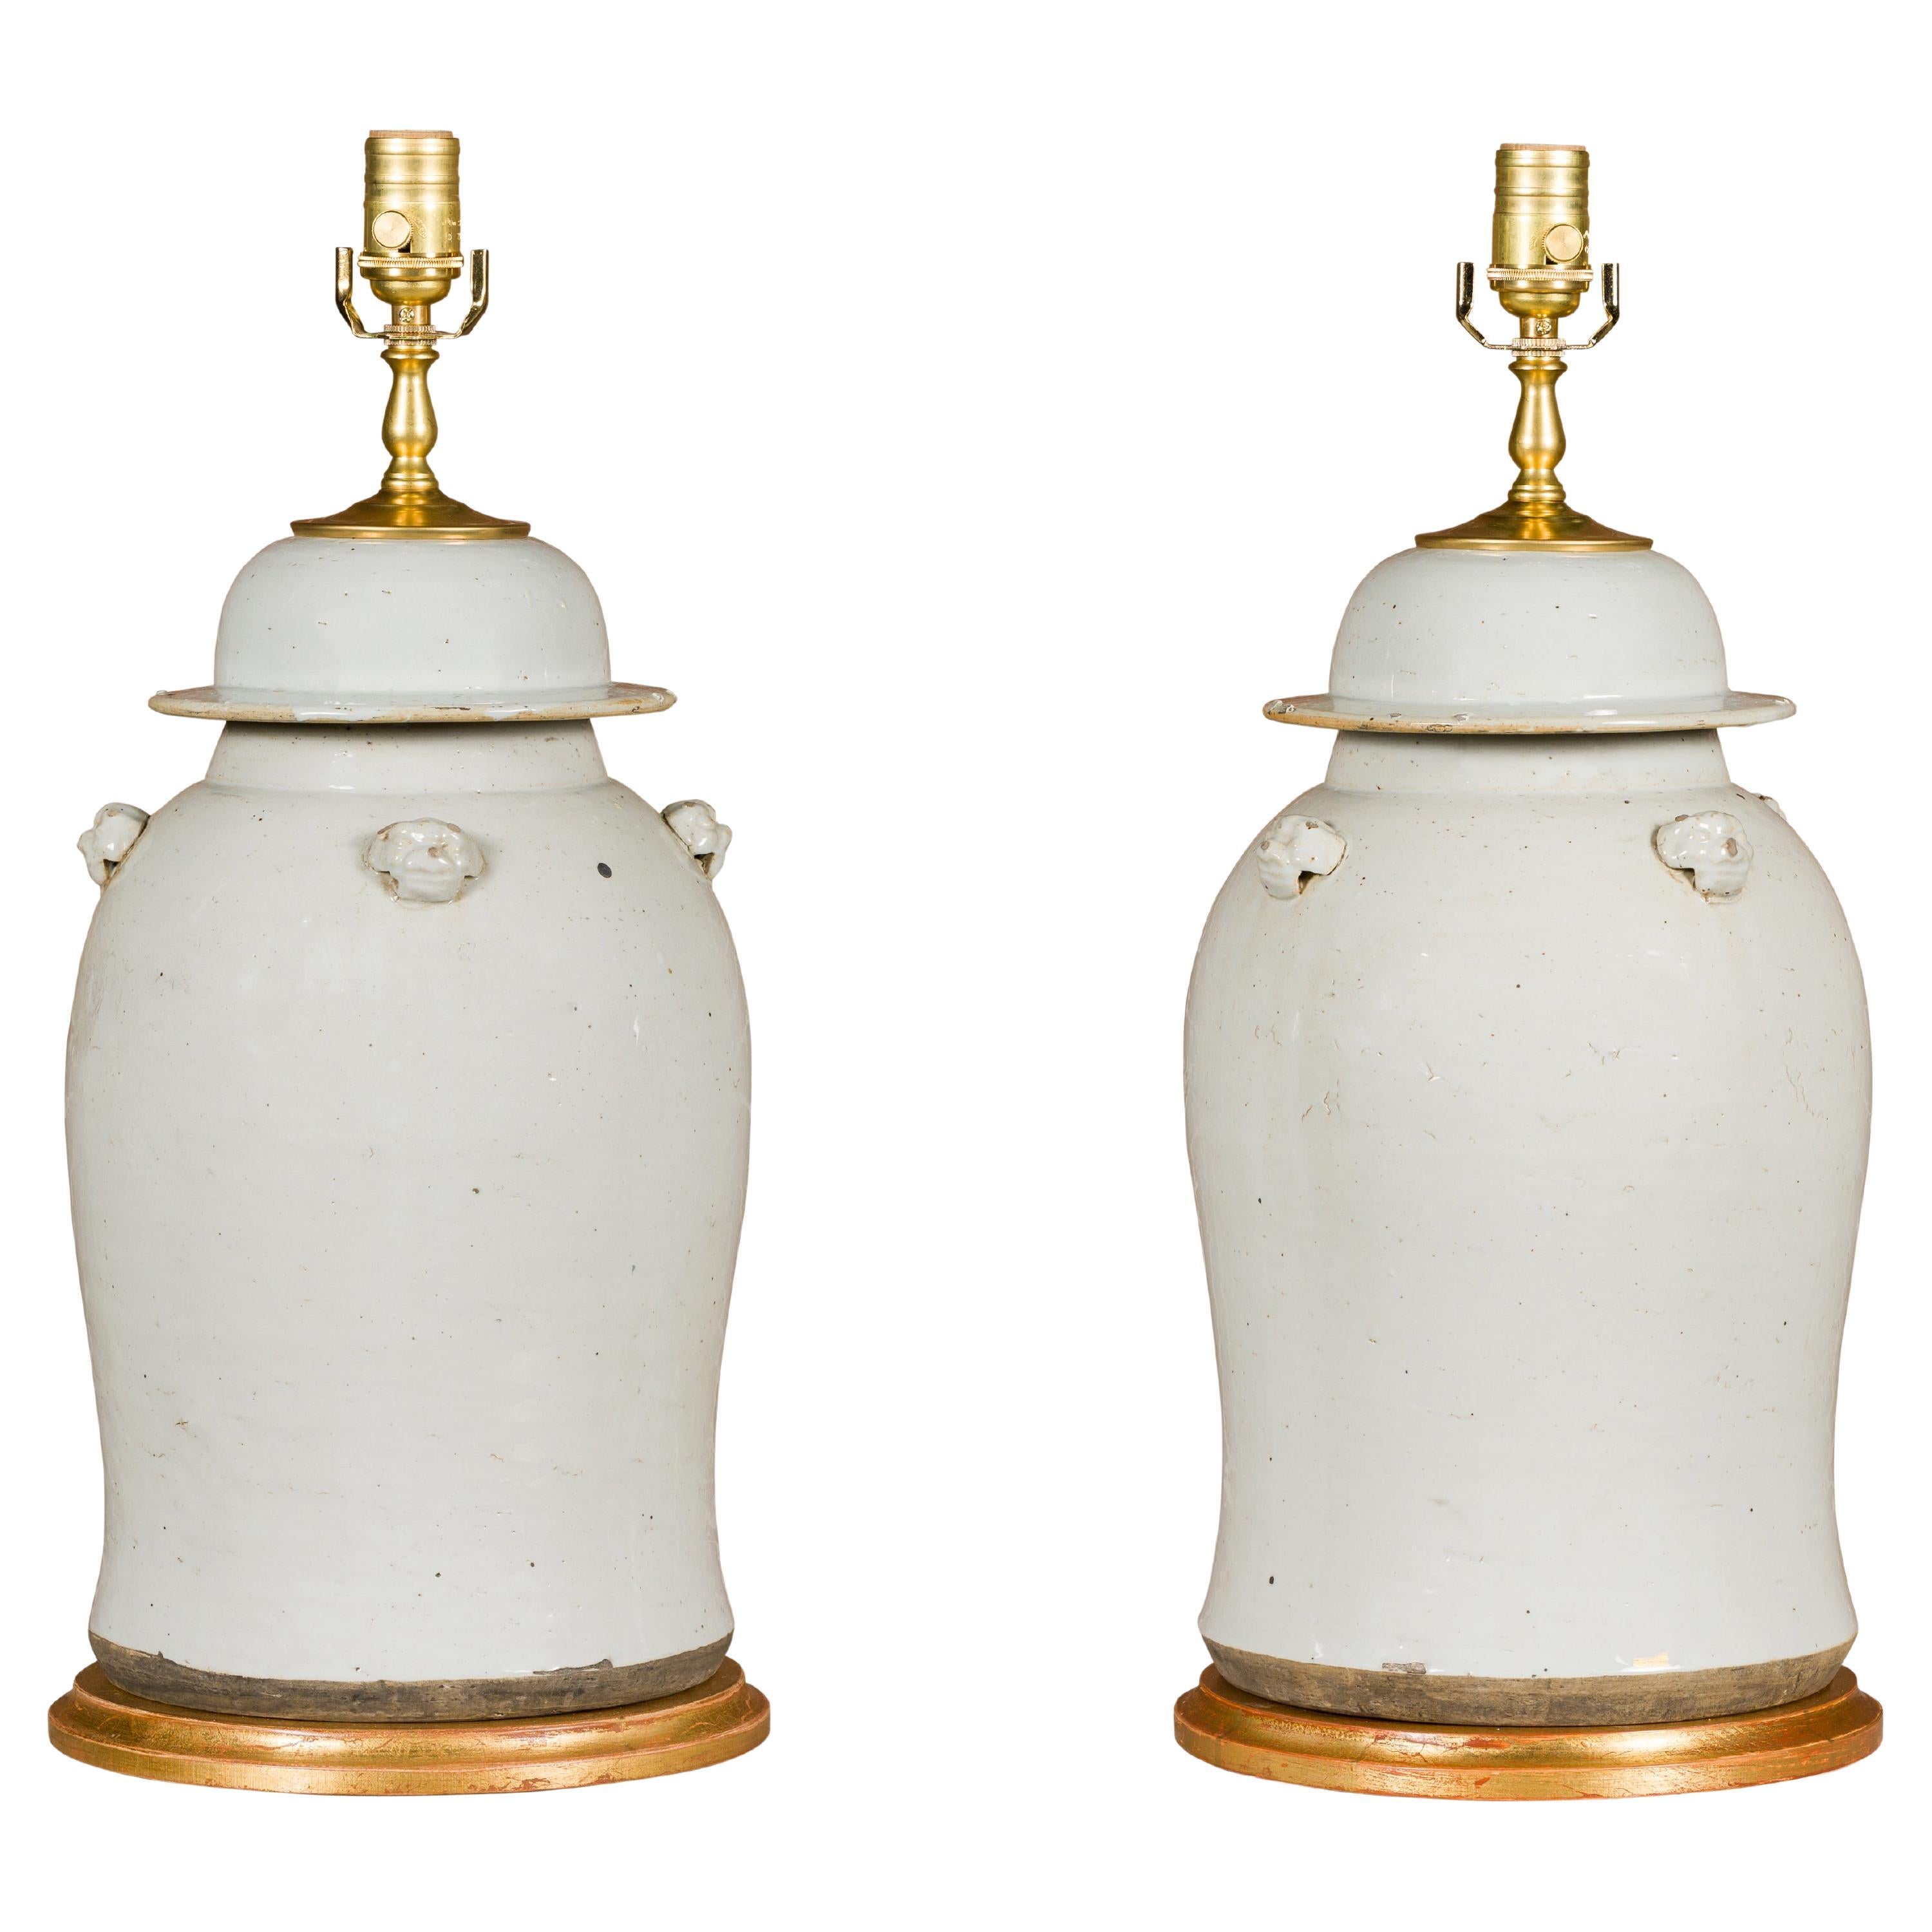 Paar Urnen aus weißem Porzellan mit Deckel zu Tischlampen auf vergoldeten Sockeln